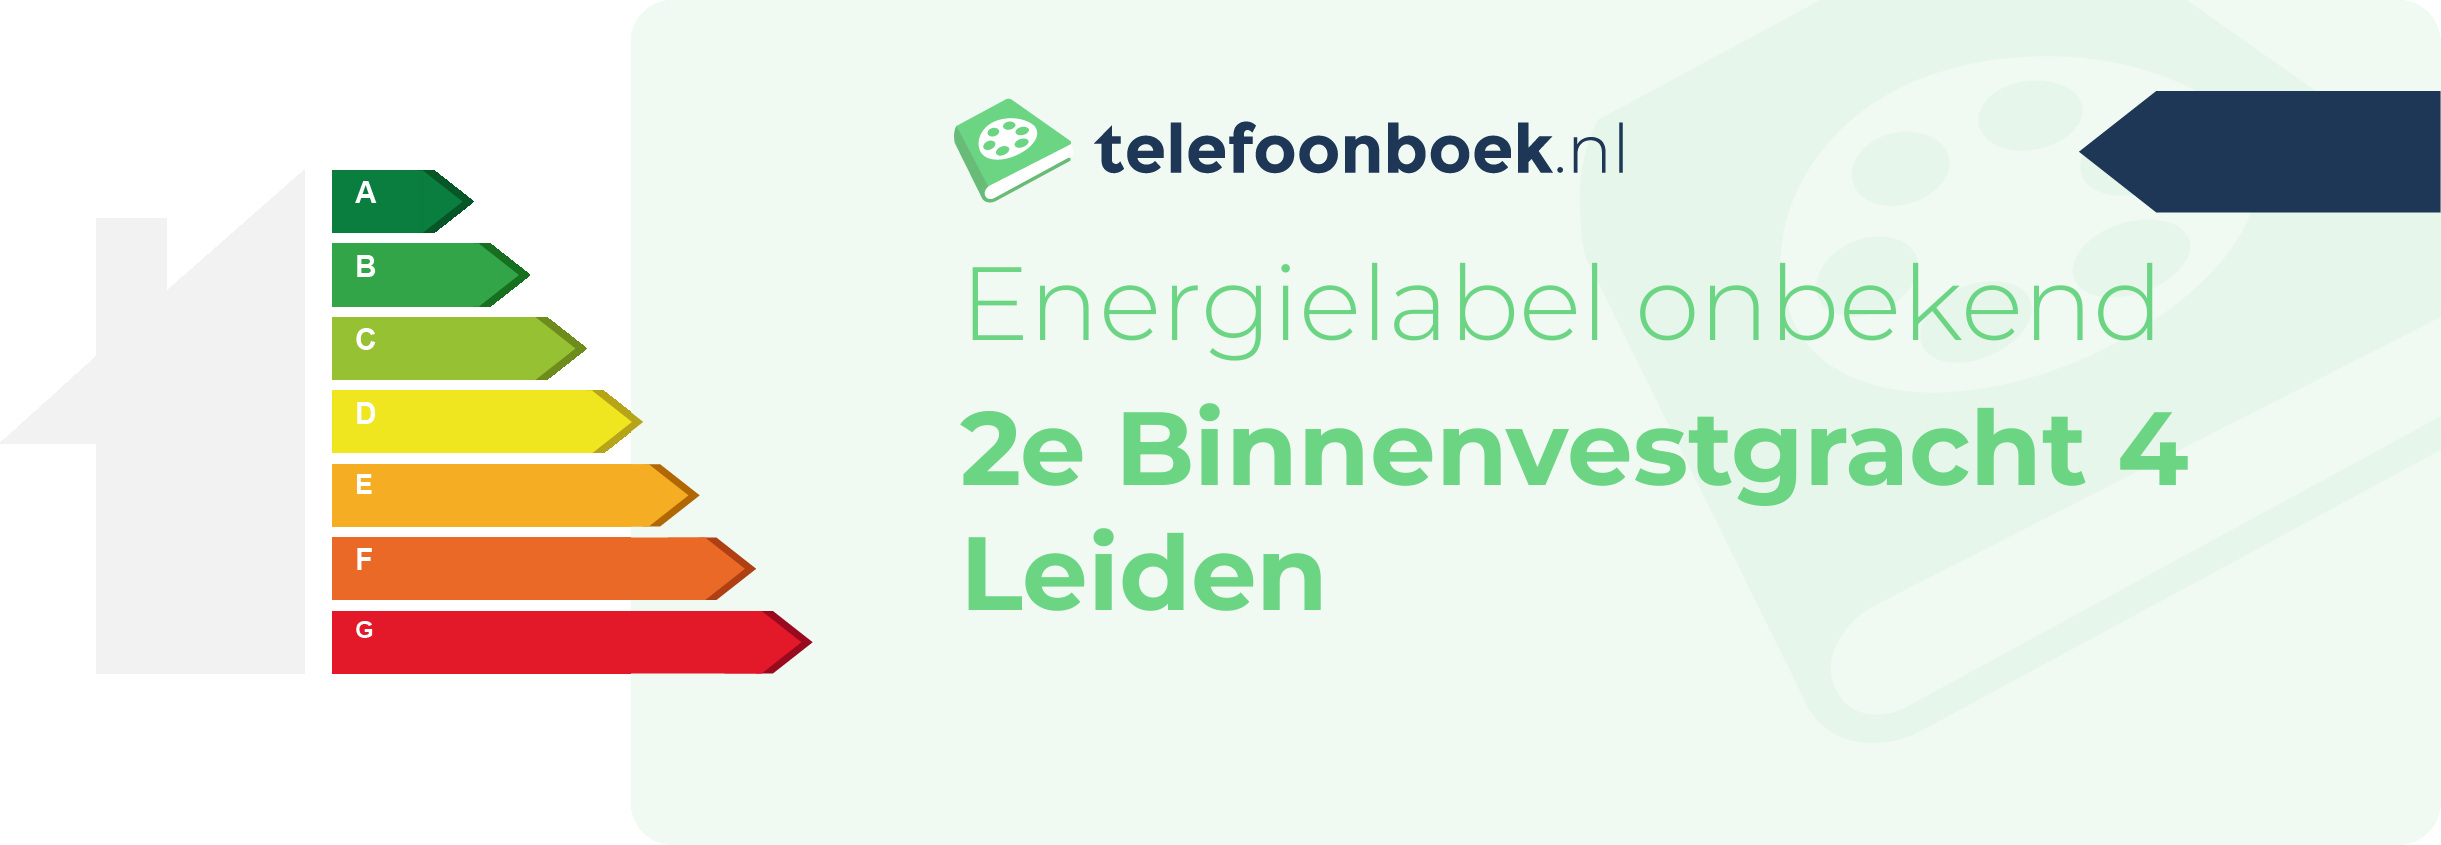 Energielabel 2e Binnenvestgracht 4 Leiden